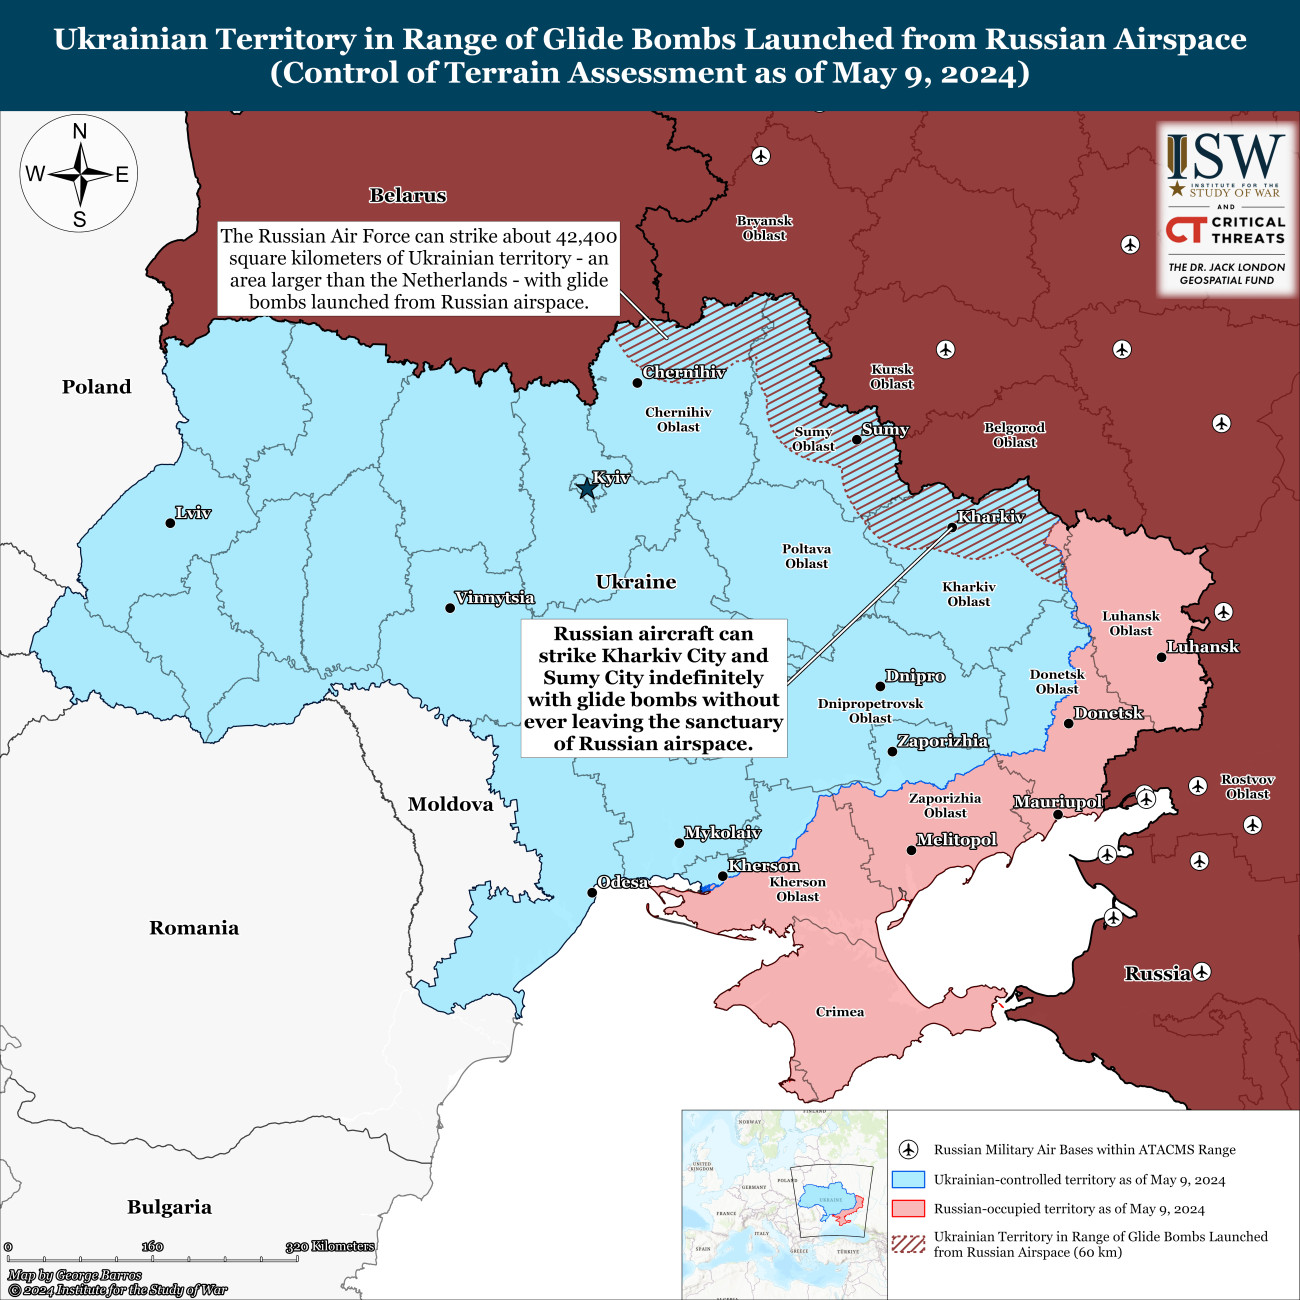 Az orosz légierő 42400 négyzet kilométernyi ukrán területet képes úgy bombázni, hogy a gépei nem lépik át határt. Ez  nagyobb terület, mint amekkora Hollandia. Háborítatlanul támadhatják Harkiv , Szumi és Csernyihiv városokat. Összesen 2480 ukrán települést rombolhatnak anélkül, hogy a légelhárítástól kellene tartaniuk.  Forrás: ISW